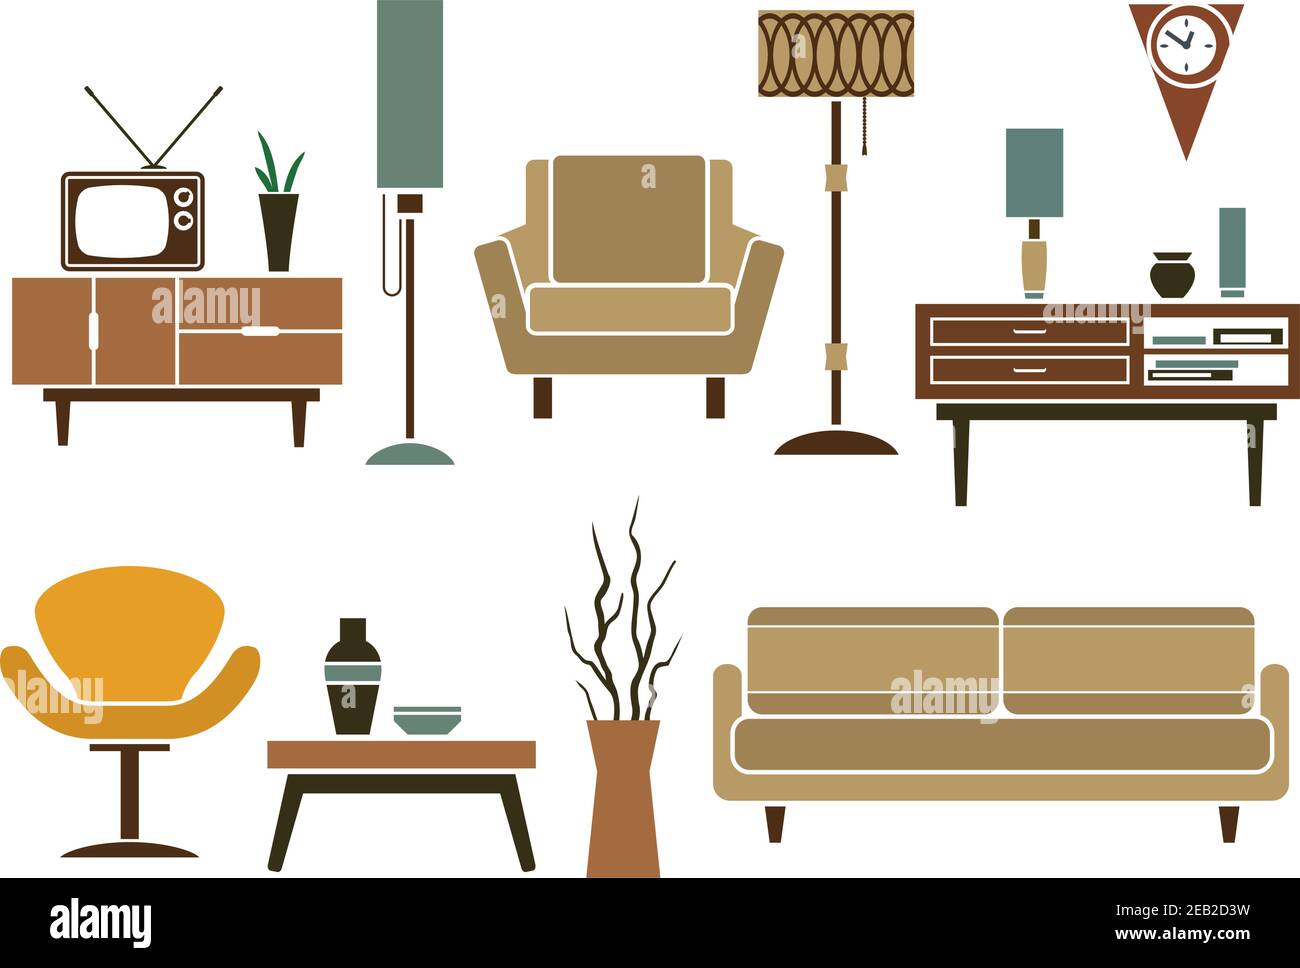 Muebles retro e iconos interiores en estilo plano con sofá y sillones, cómodas y mesa, tv y accesorios interiores, lámparas de piso y va Ilustración del Vector